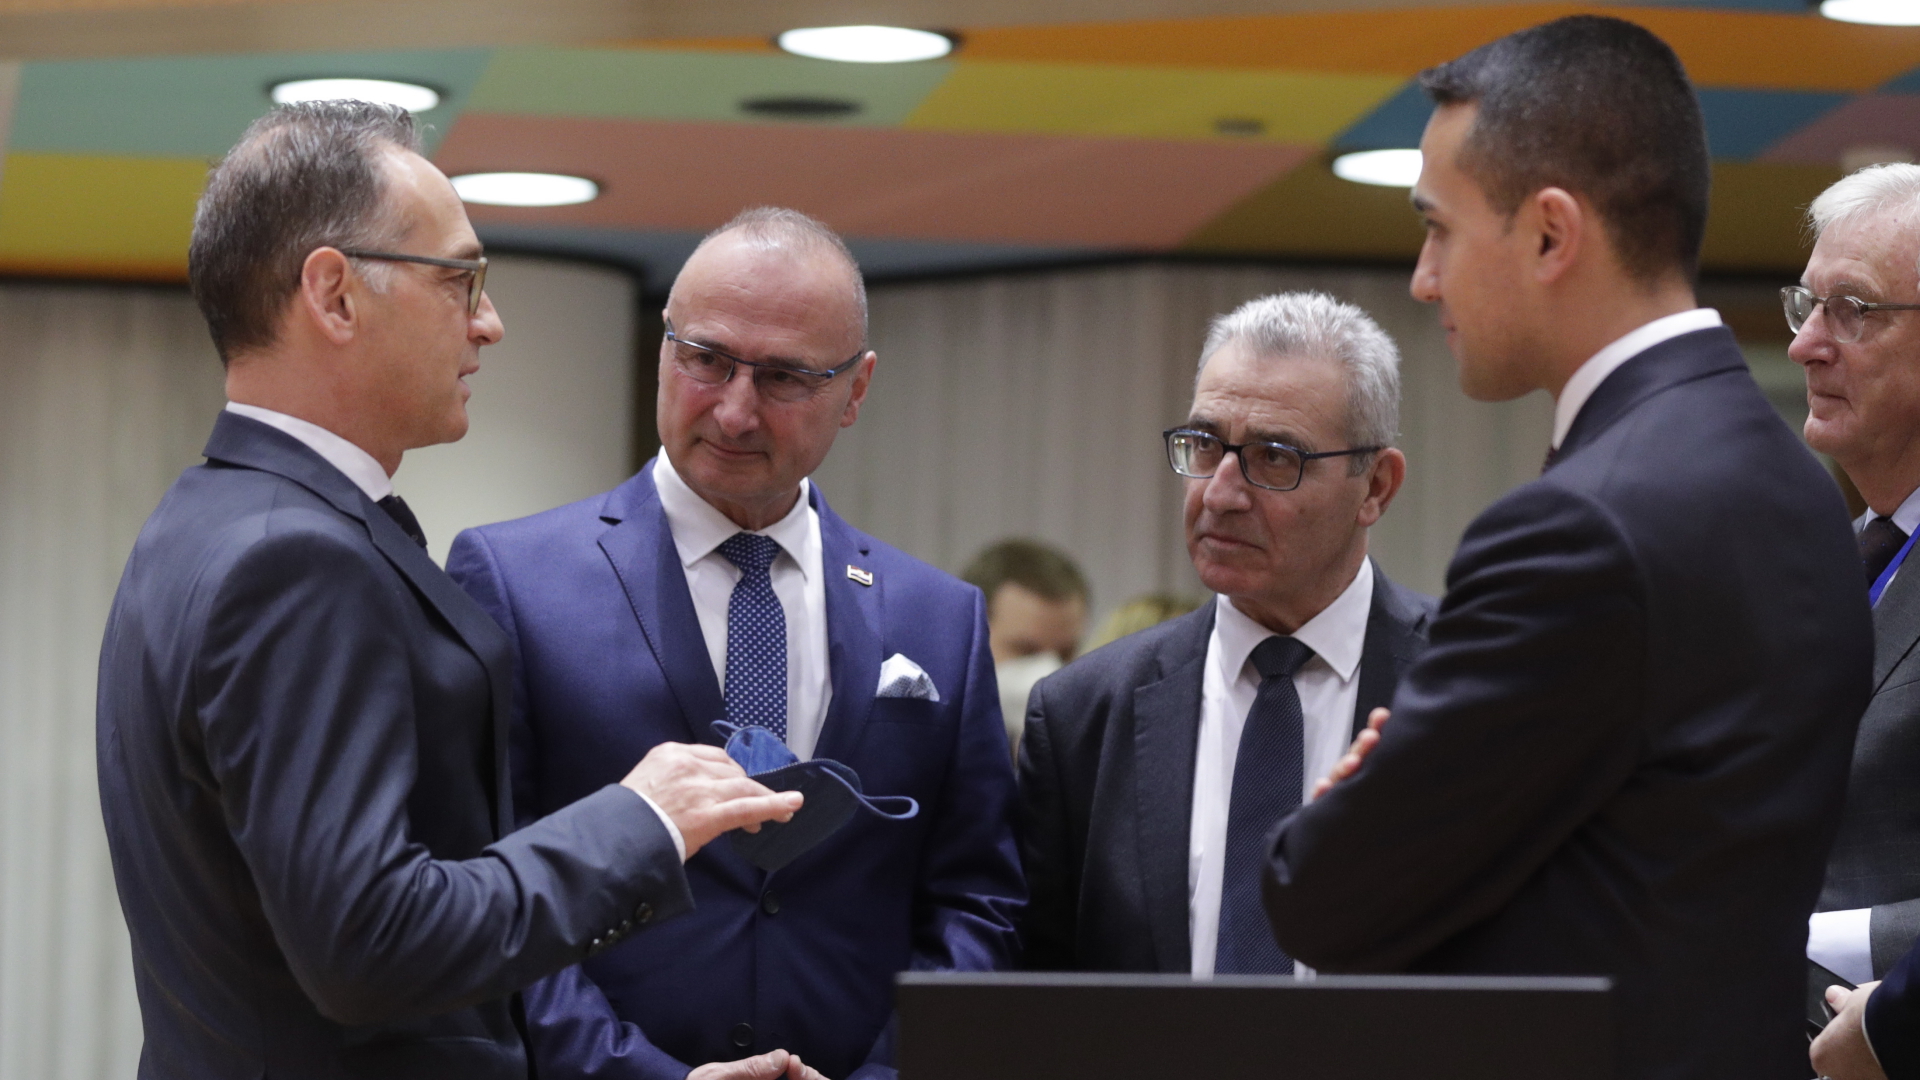 Außenminister Heiko Maas (l-r) im Gespräch mit seinen Kollegen aus Kroatien, Gordan Grlic-Radman, Malta, Evarist Bartolo, und Italien, Luigi Di Maio, in Brüssel. | EPA